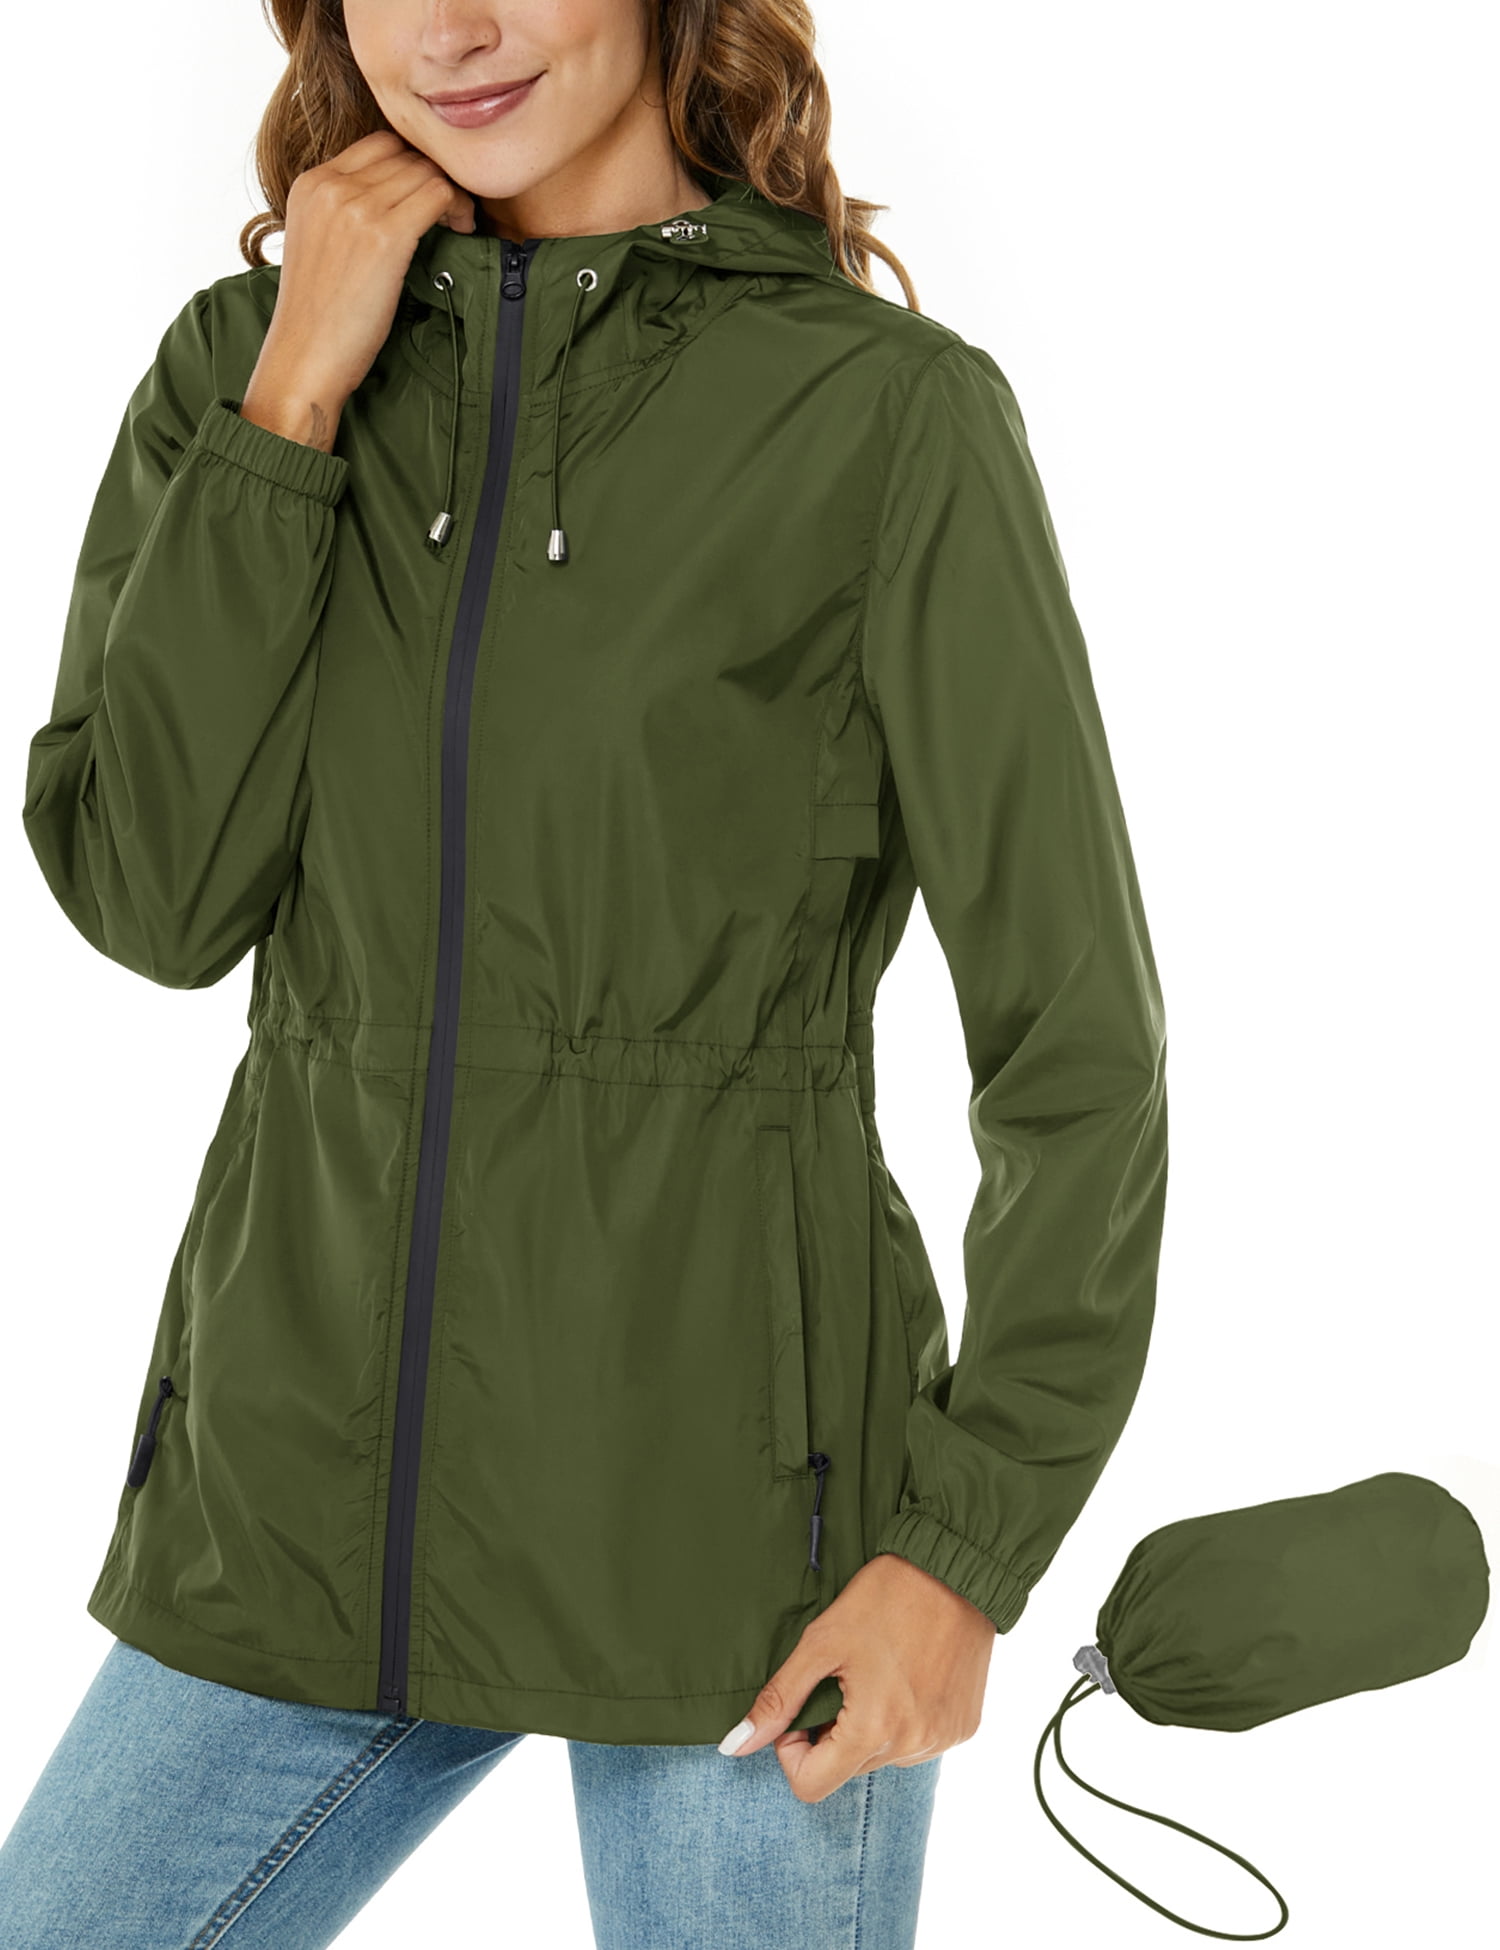 JNX Raincoat Women Impermeable Waterproof Windproof Rain Coat Windcoat Bike Jackets,Army Green,S 